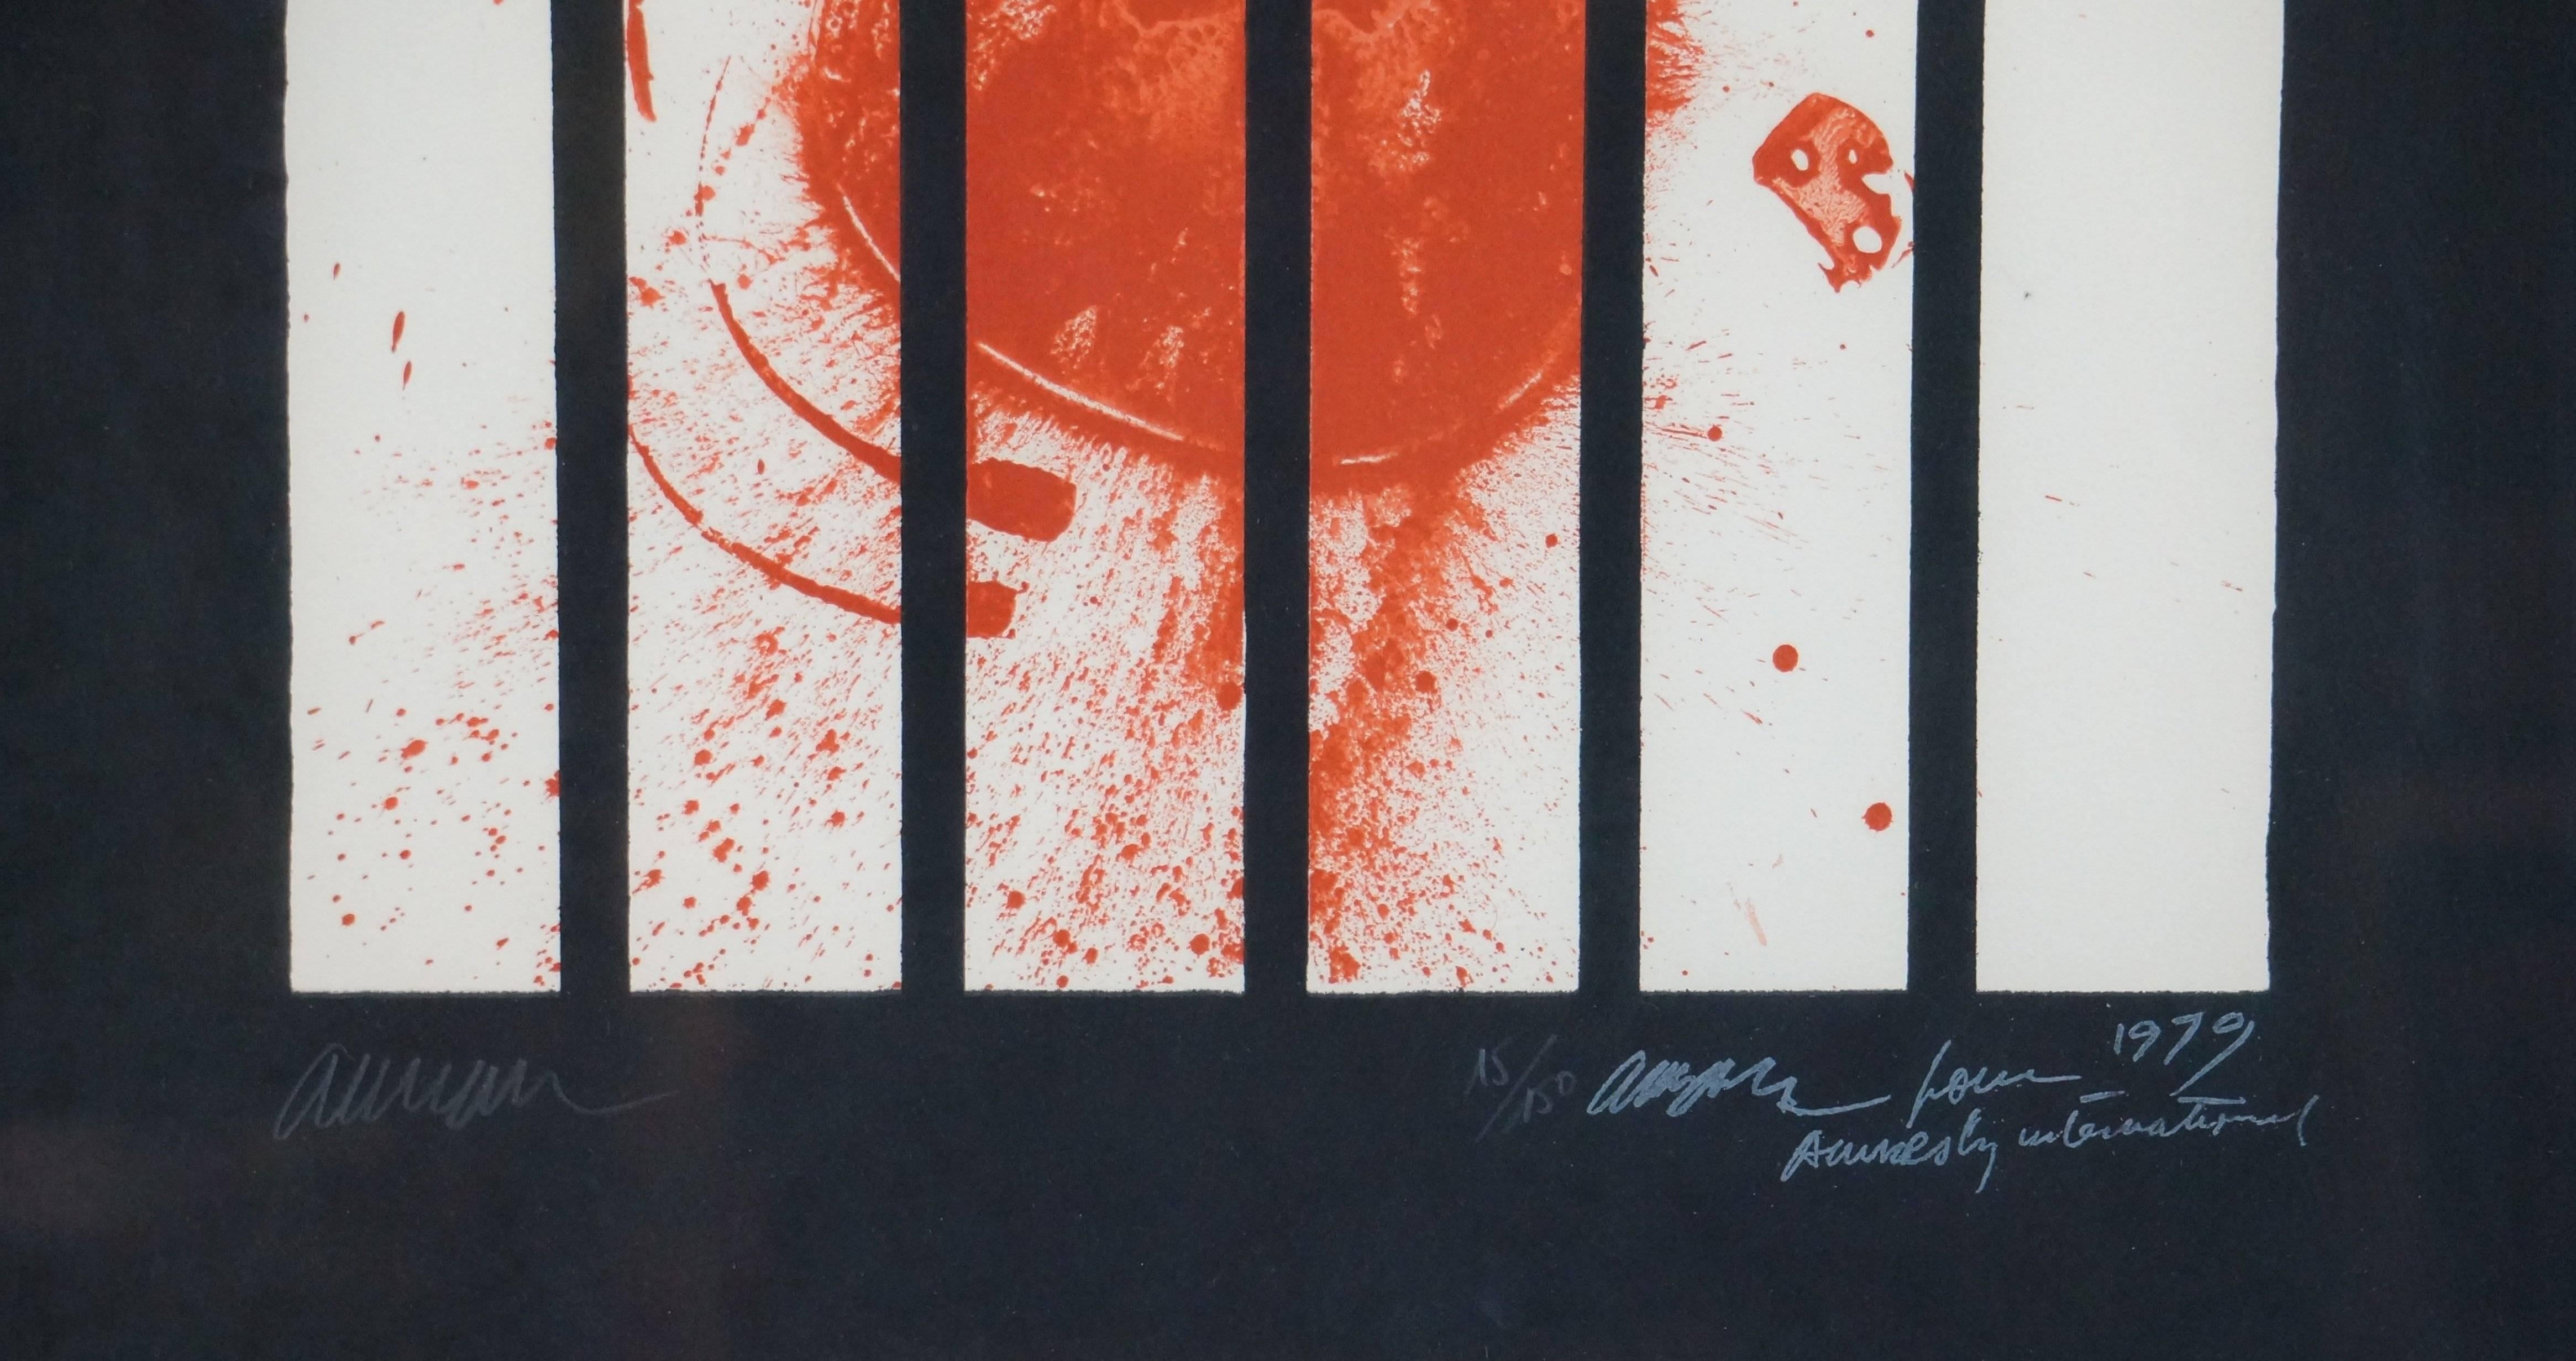 Abstrakte abstrakte Komposition AI, 1979 - Litograph, 86x66 cm, gerahmt (Schwarz), Abstract Print, von Arman